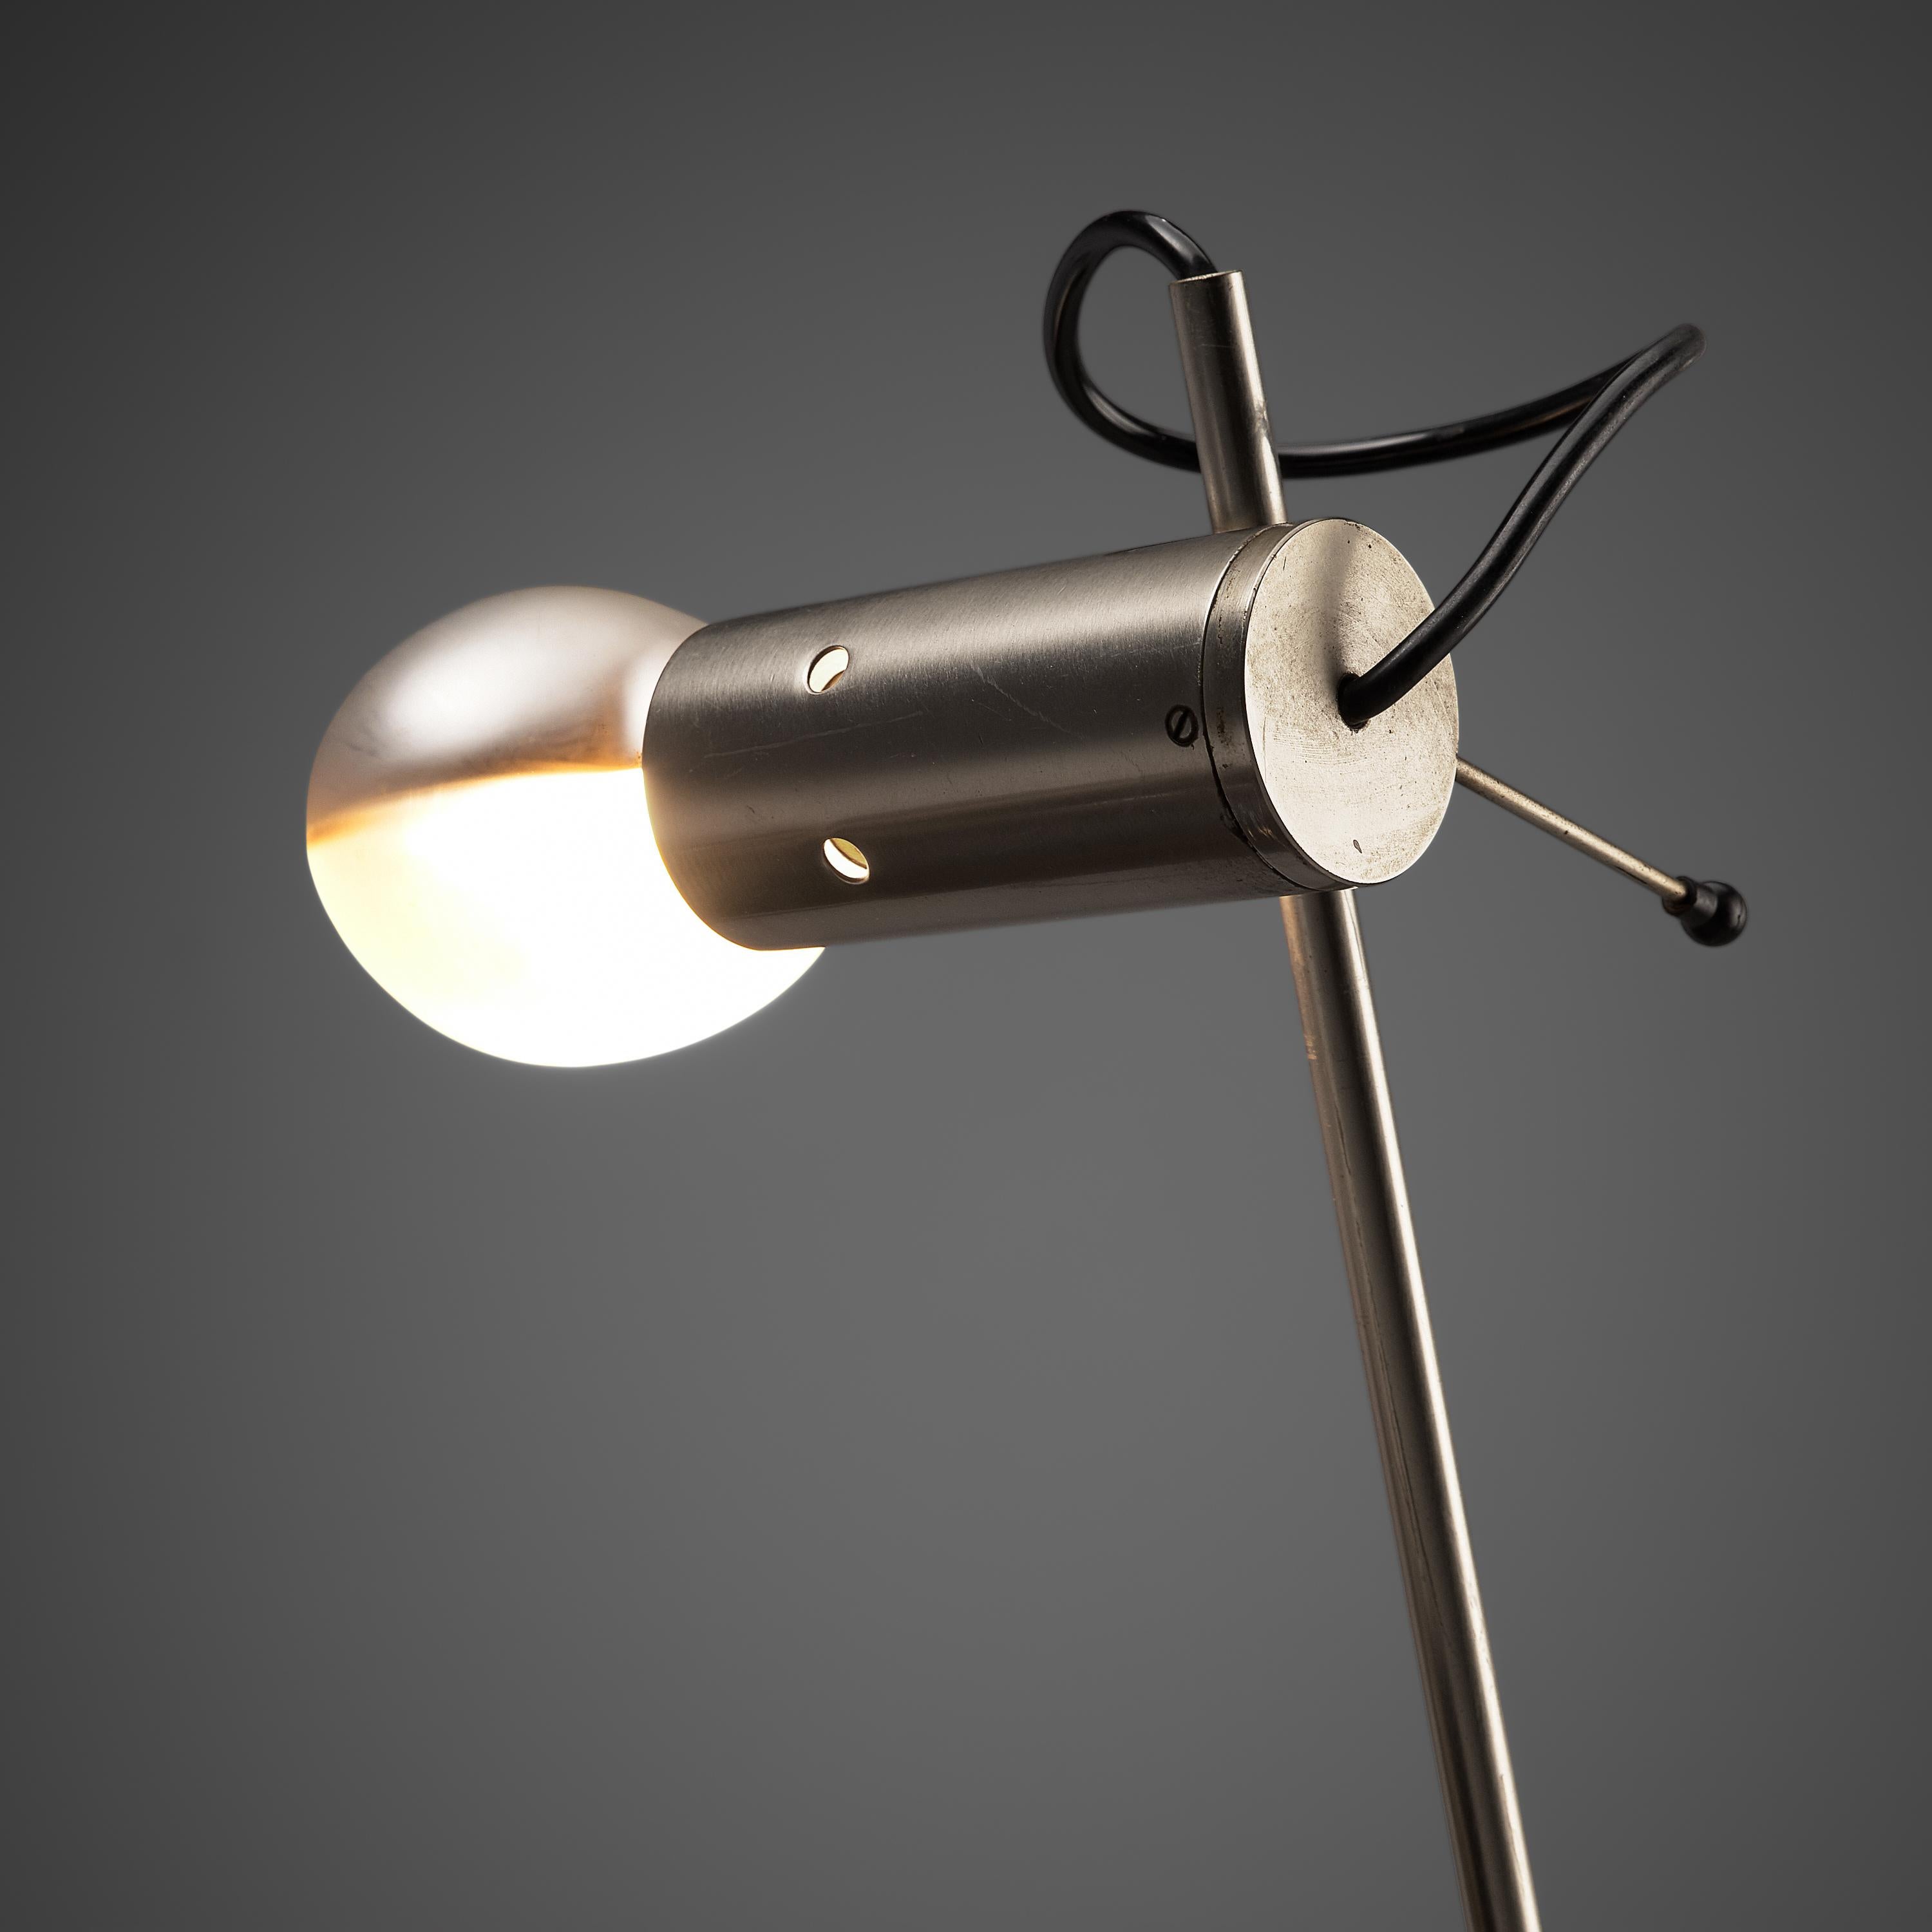 Tito Agnoli pour O-Luce, lampe de bureau 'Cornalux', métal, Italie, 1964.

Lampe de table moderne conçue par Tito Agnoli. L'ampoule possède un réflecteur à l'intérieur et le cadre est en acier, ce qui donne à la lampe son aspect minimaliste. Un